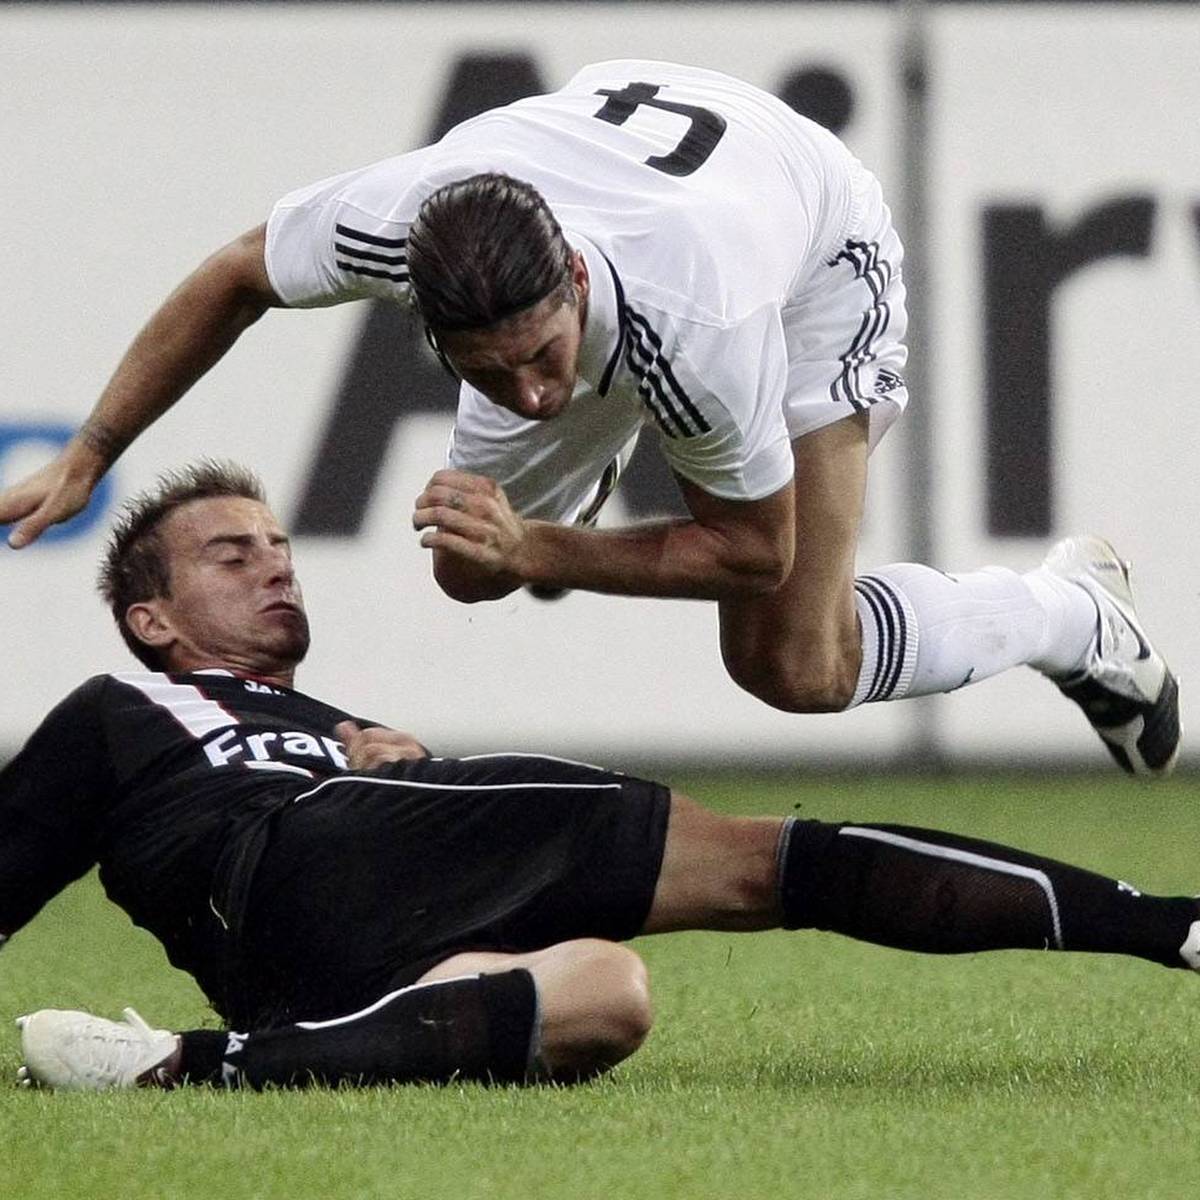 Vor dem UEFA-Supercup-Finale zwischen Real Madrid und Eintracht Frankfurt werden Erinnerungen an ein Duell im Jahr 2008 wach. Der damalige Trainer Friedhelm Funkel erinnert sich - und beleuchtet den erstaunlichen Wandel der Eintracht.